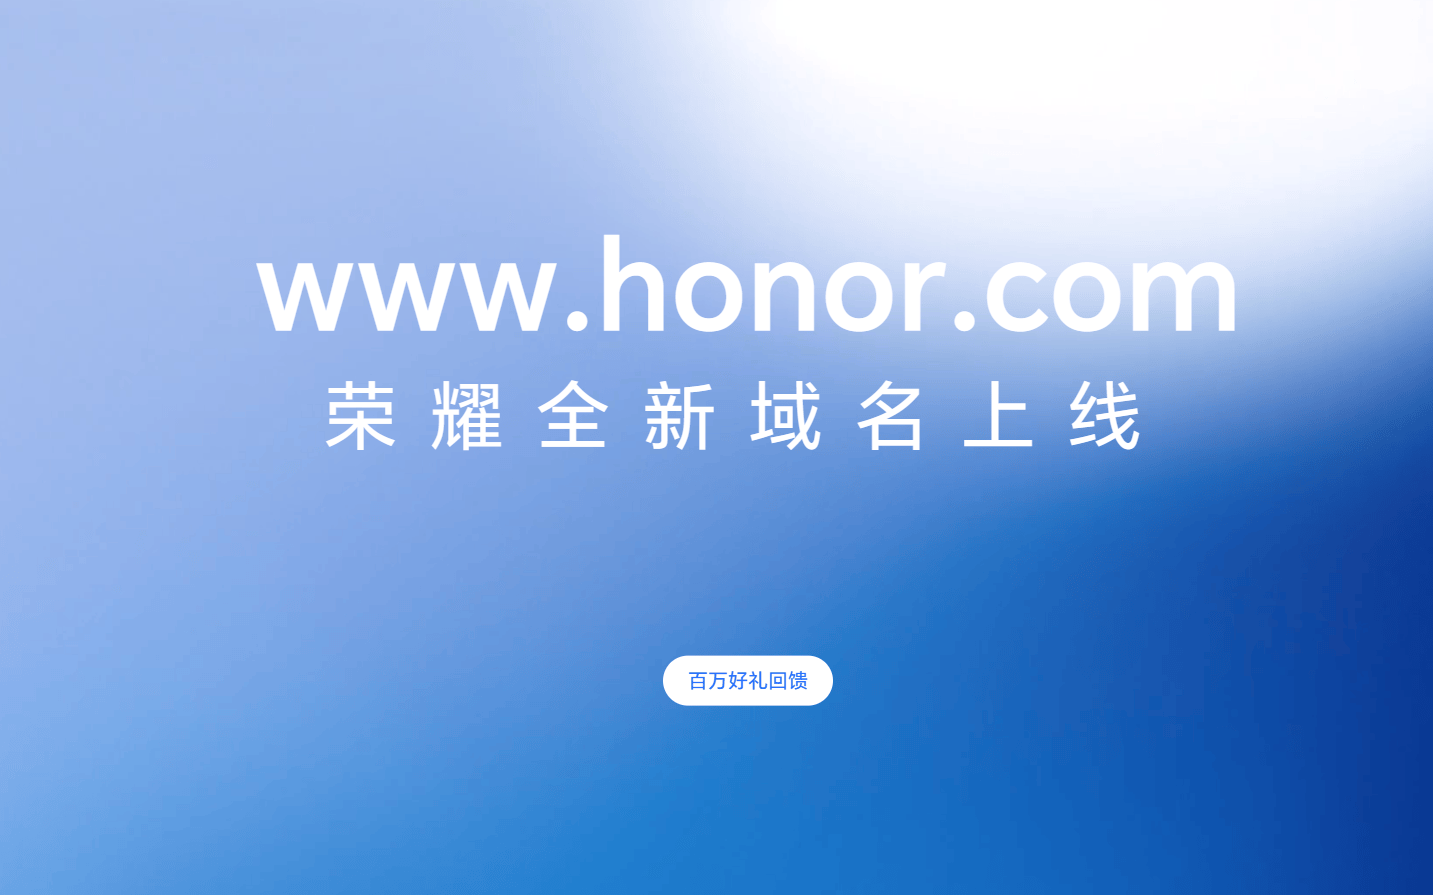 荣耀官网域名从 hihonor.com 改回 honor.cn 